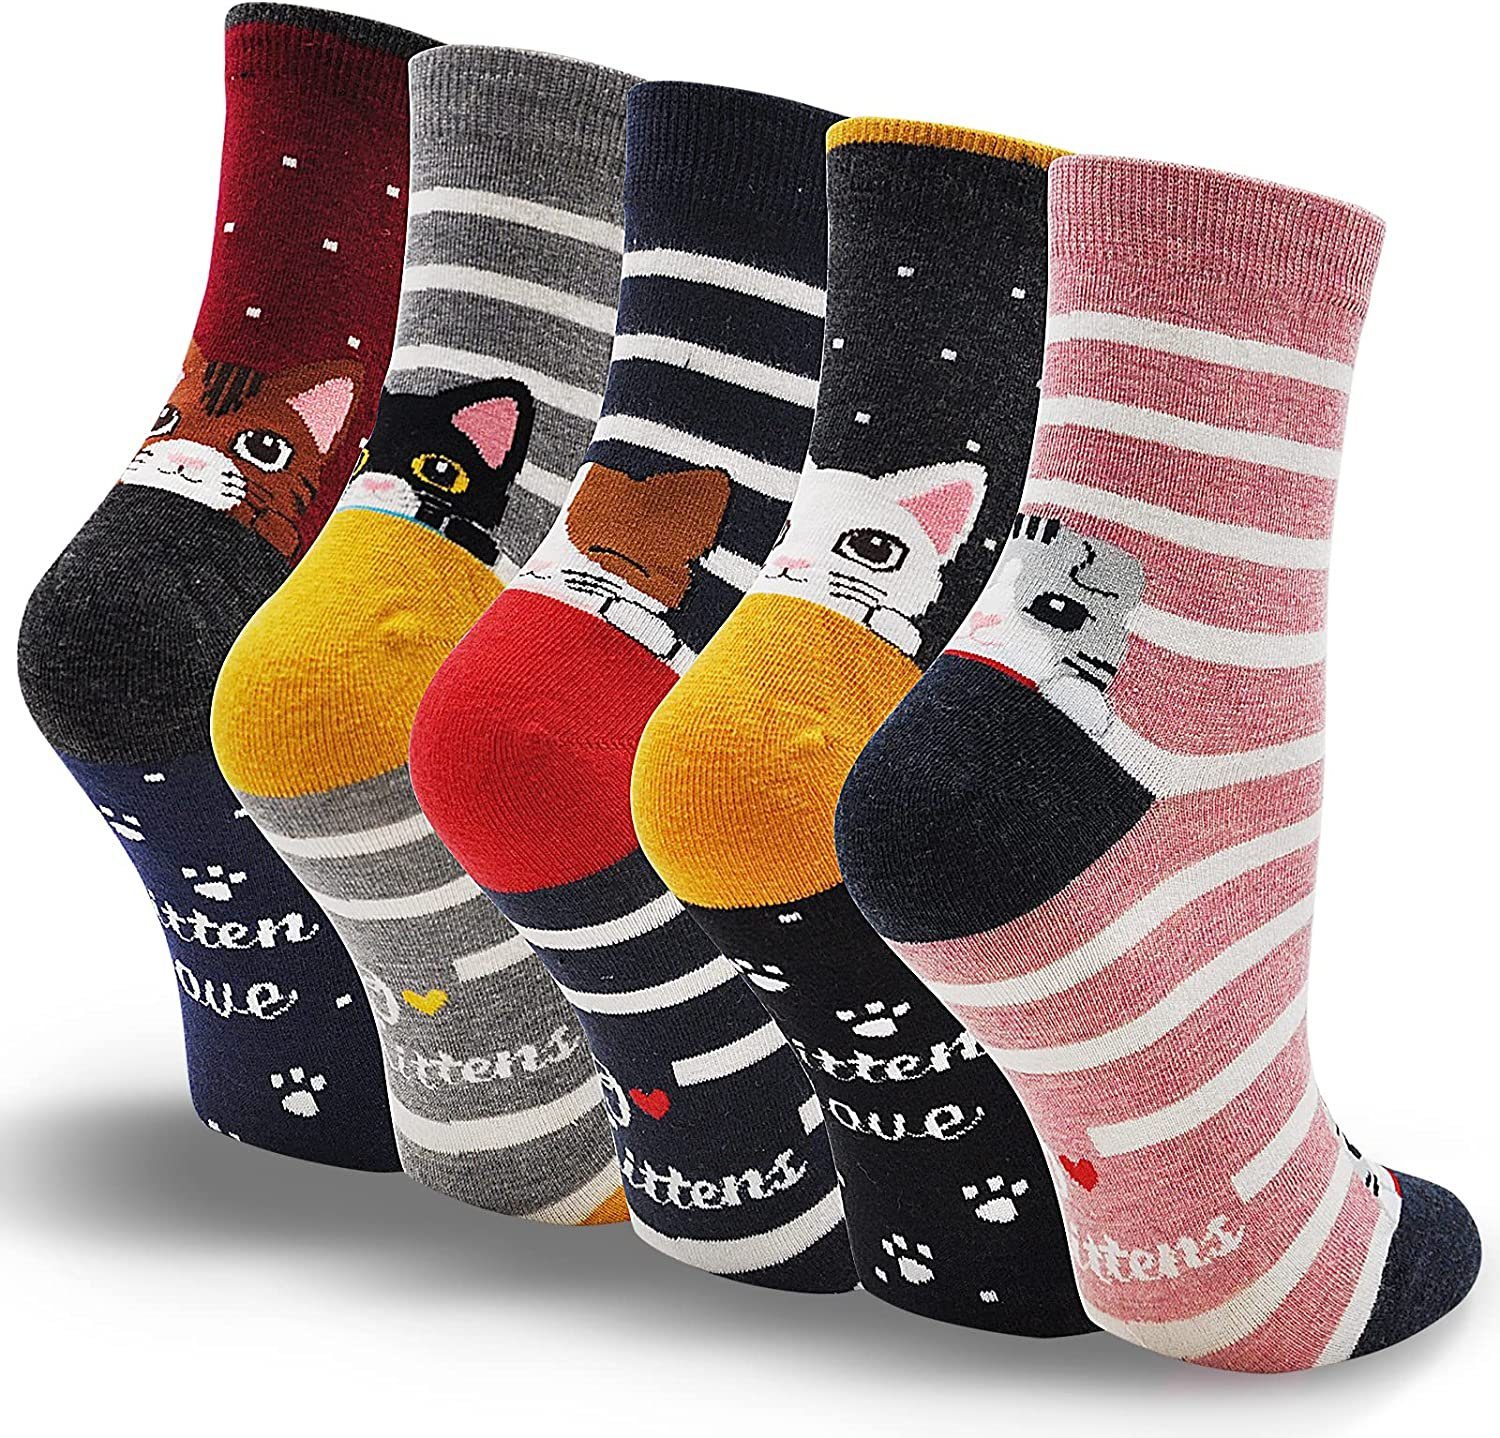 Alster  Herz Alster Herz Freizeitsocken 5x lustige Socken, Katzenmotiv, bunt, trendy, süßes Design, A0344 (5-Paar) atmungsaktiv